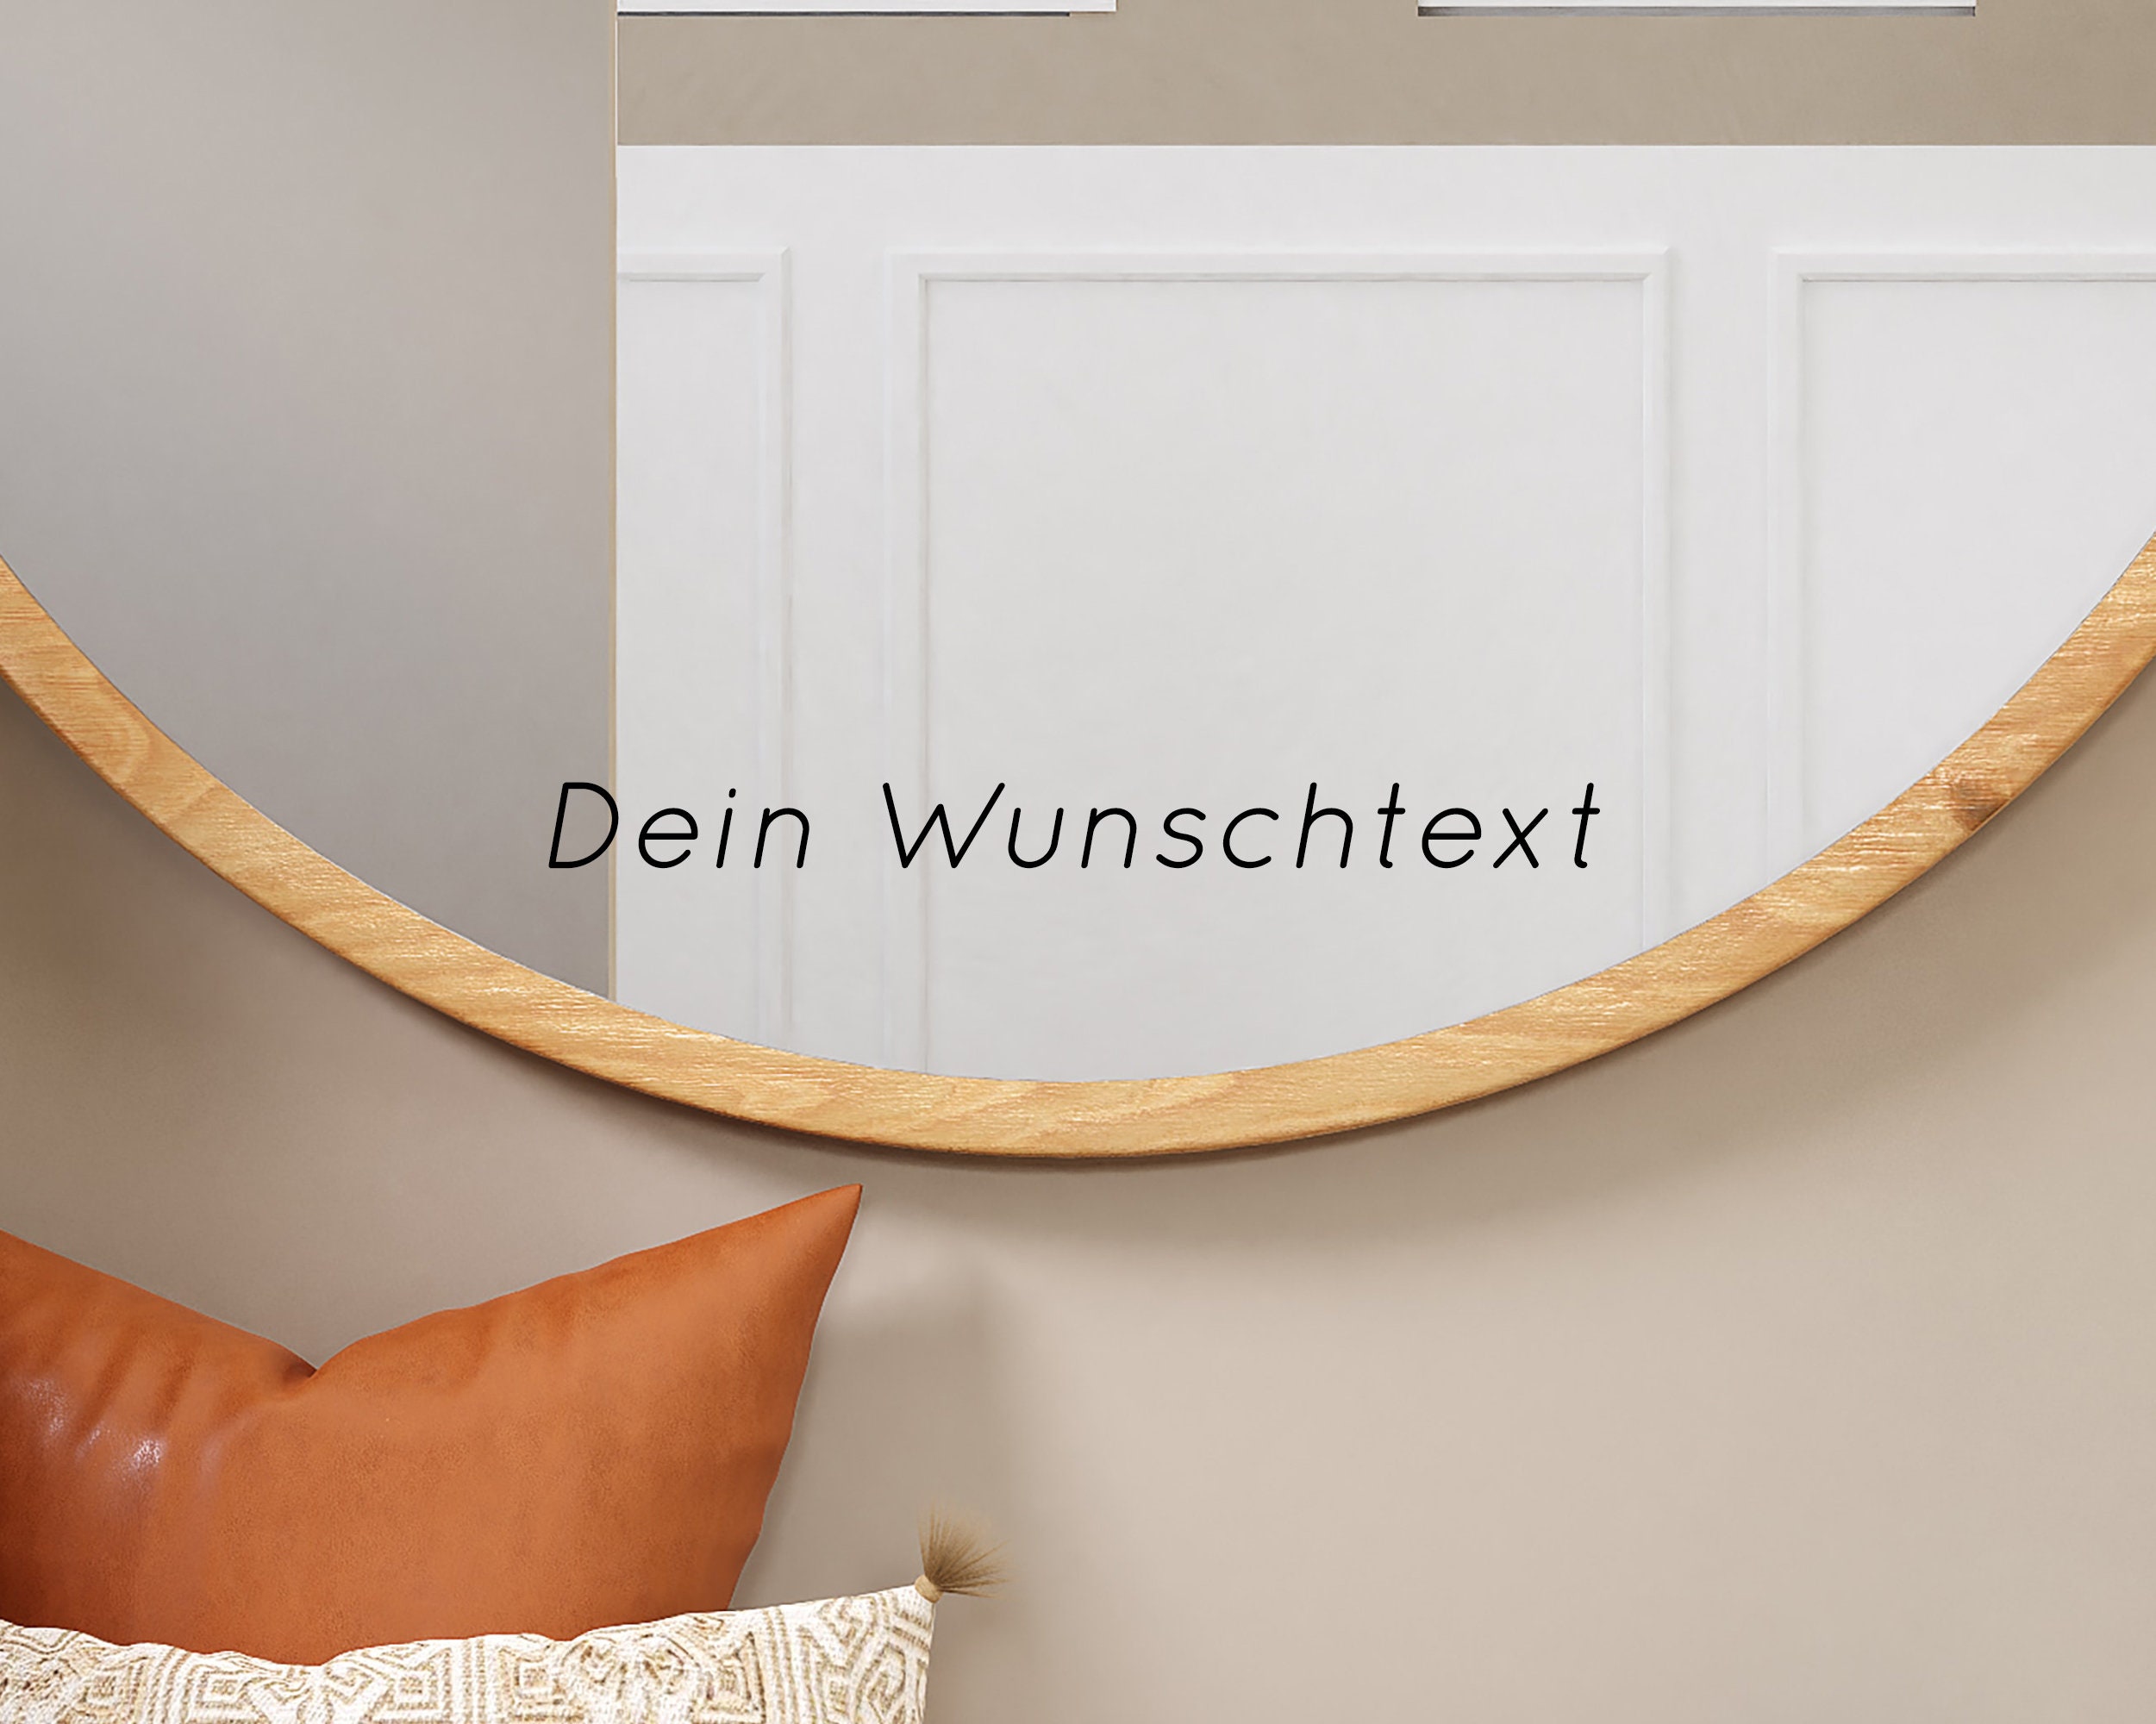 Neue Spiegel Sticker ✨ #spiegelsticker #sticker #aufkleber